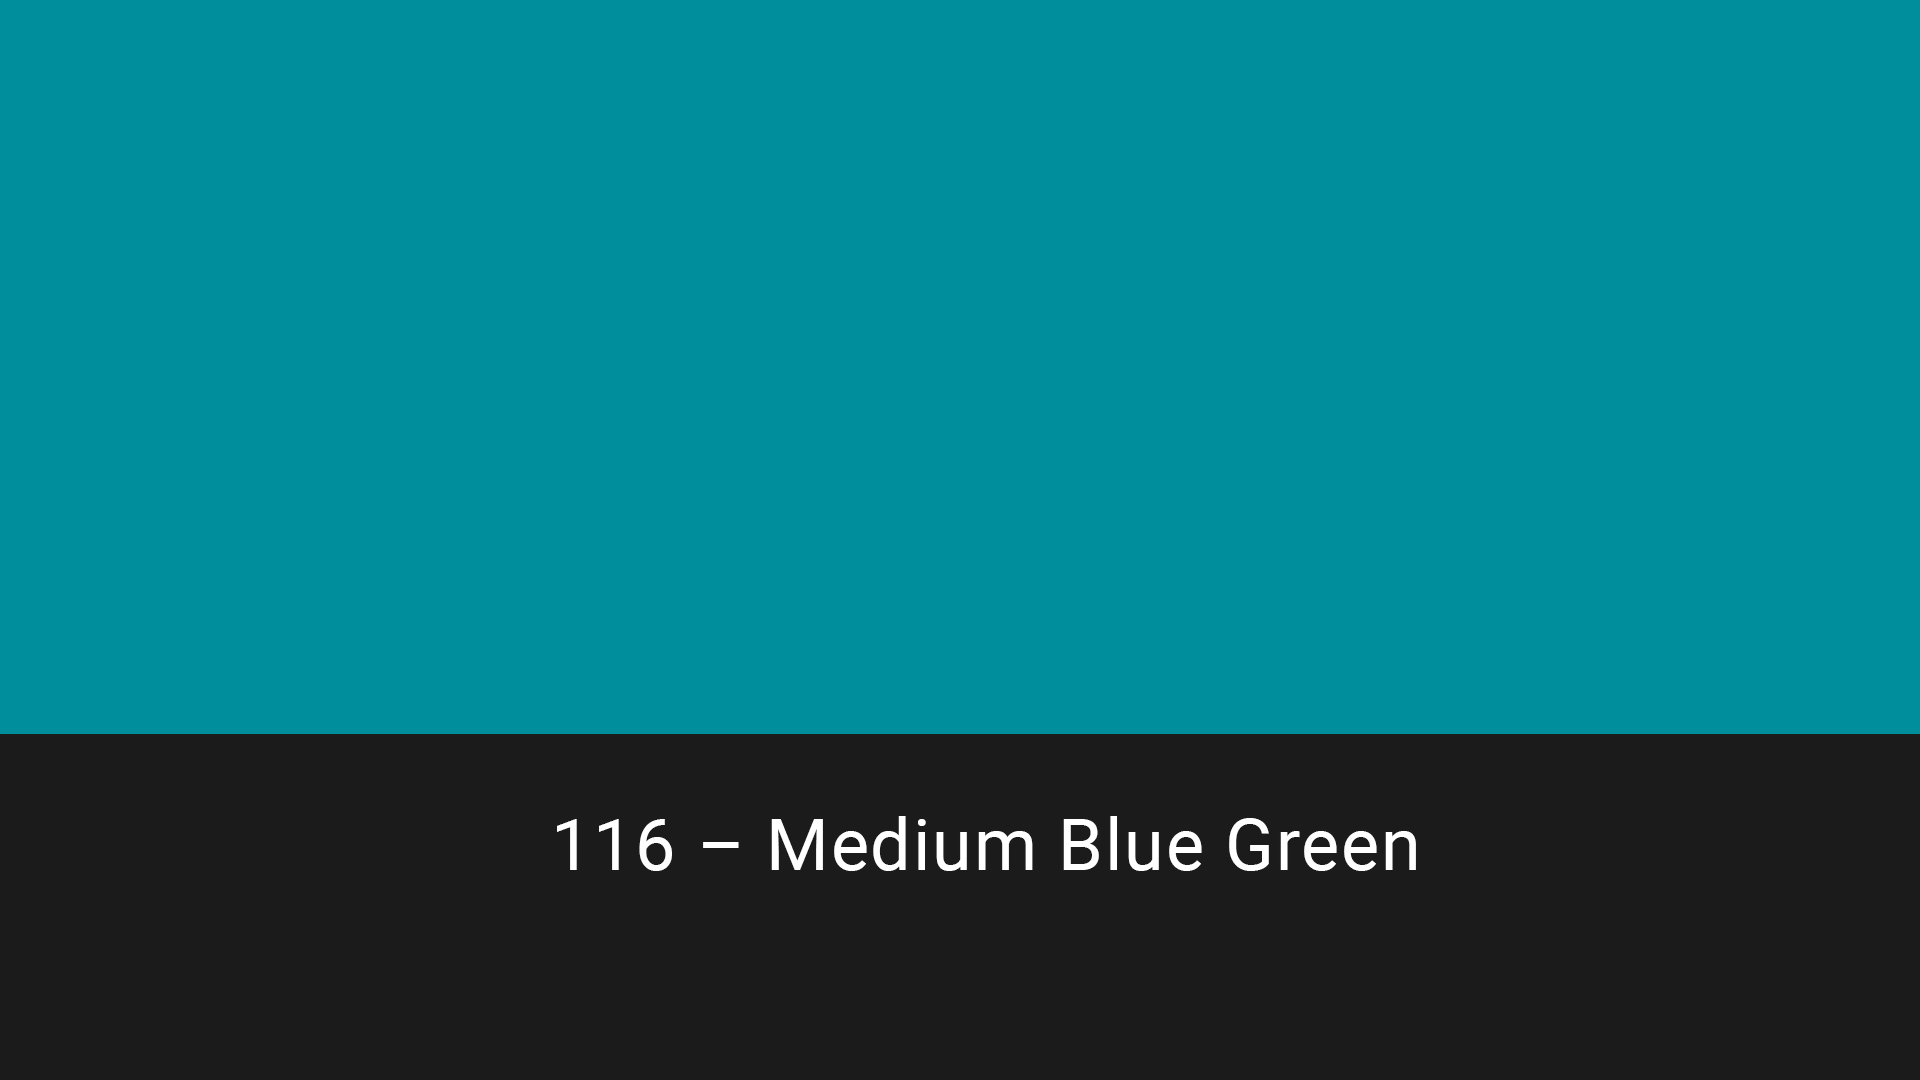 Cotech filters 116 Medium Blue Green